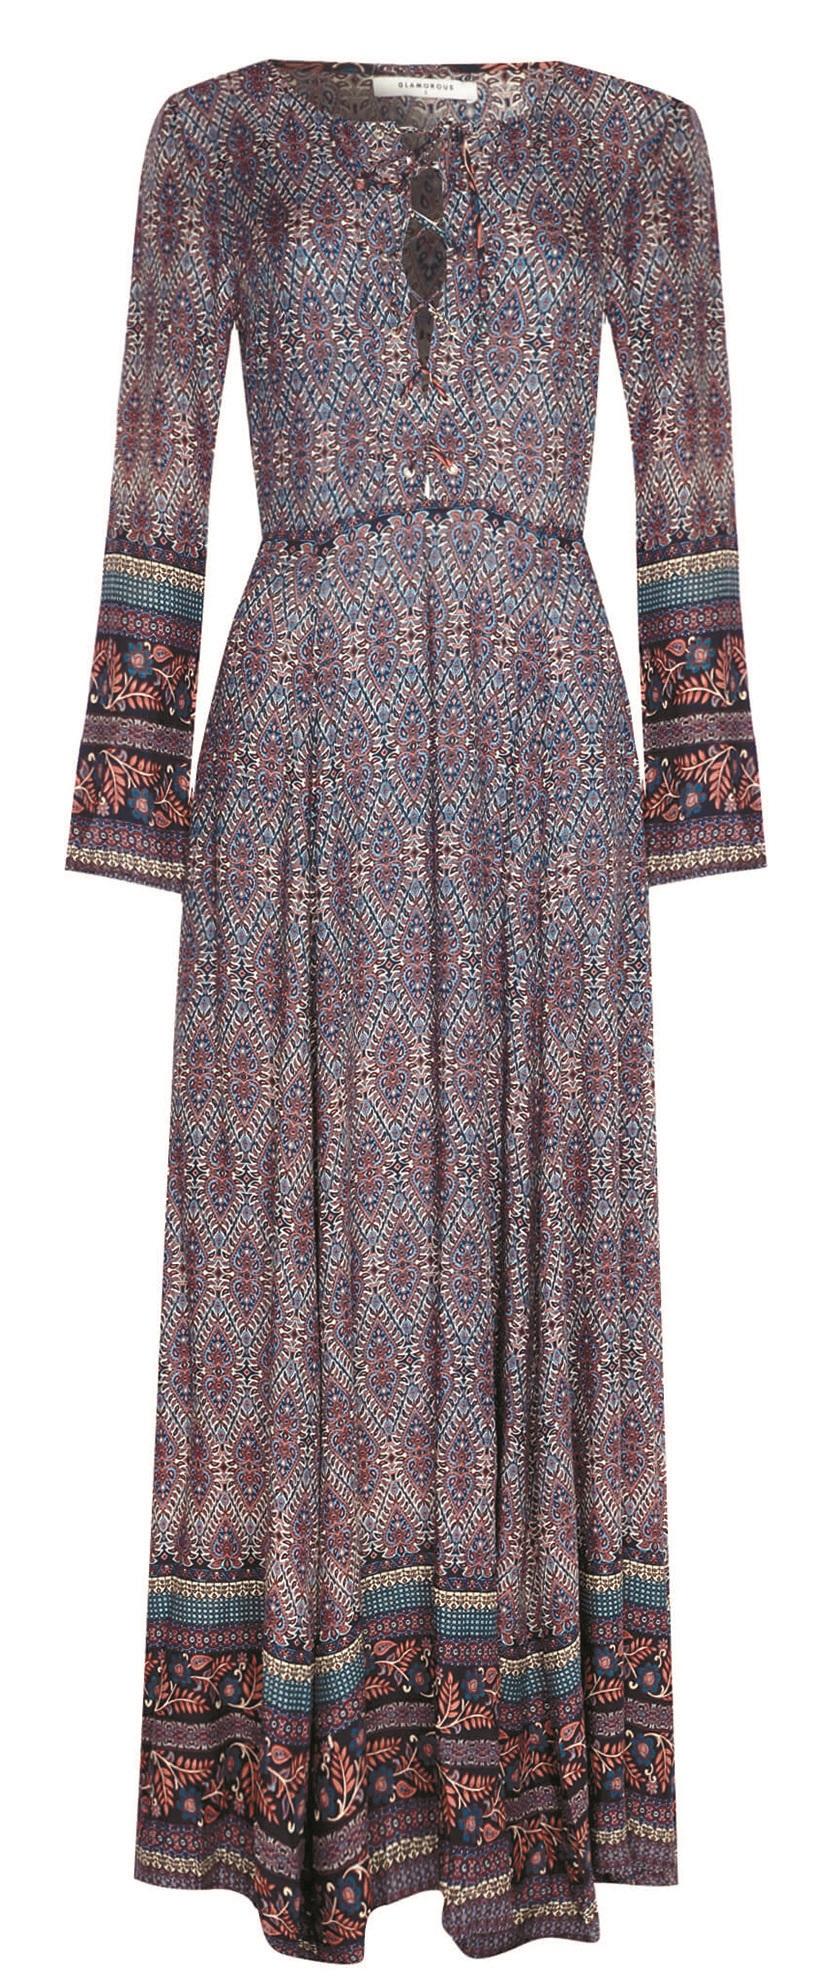 Glamorous, Indigo Paisley Border Print Lace Up Maxi Dress, £50